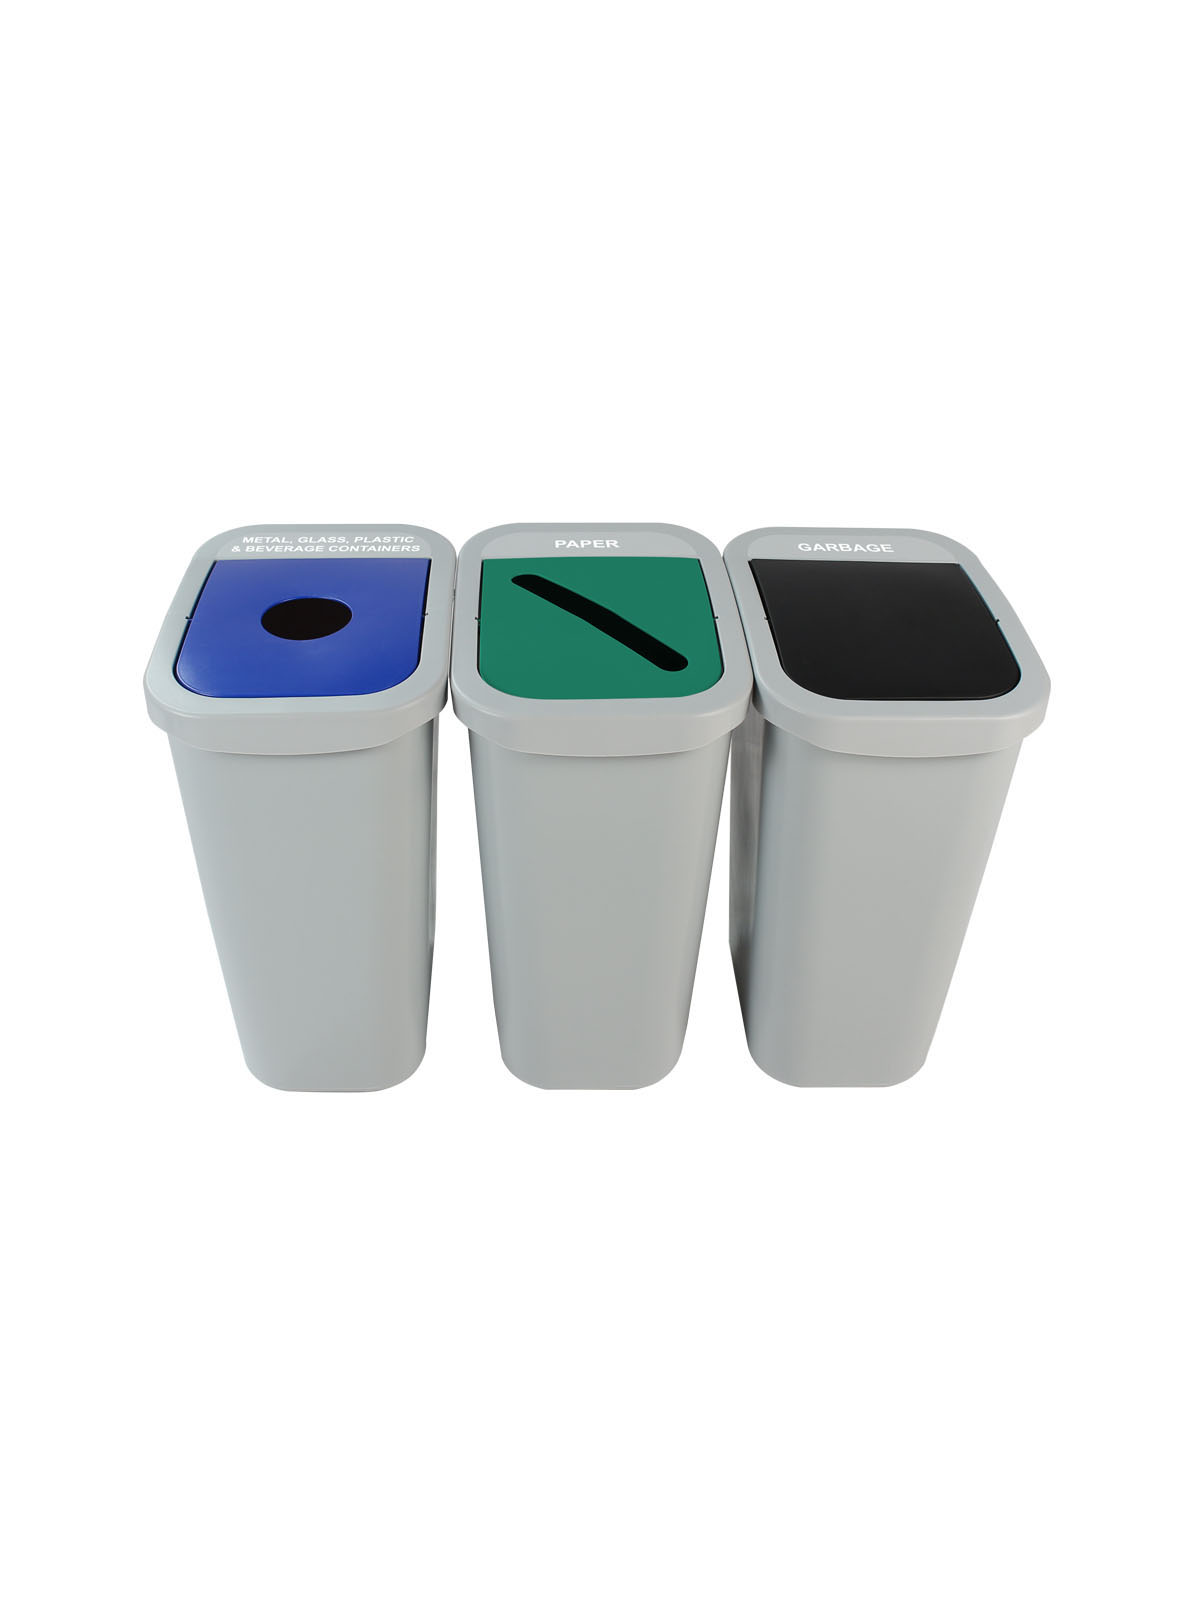 比利盒 - 三重 - 符合 - 金属，玻璃，塑料和饮料容器集装箱 - 垃圾 - 圆圈摇摆 - 灰蓝绿色黑色标题=